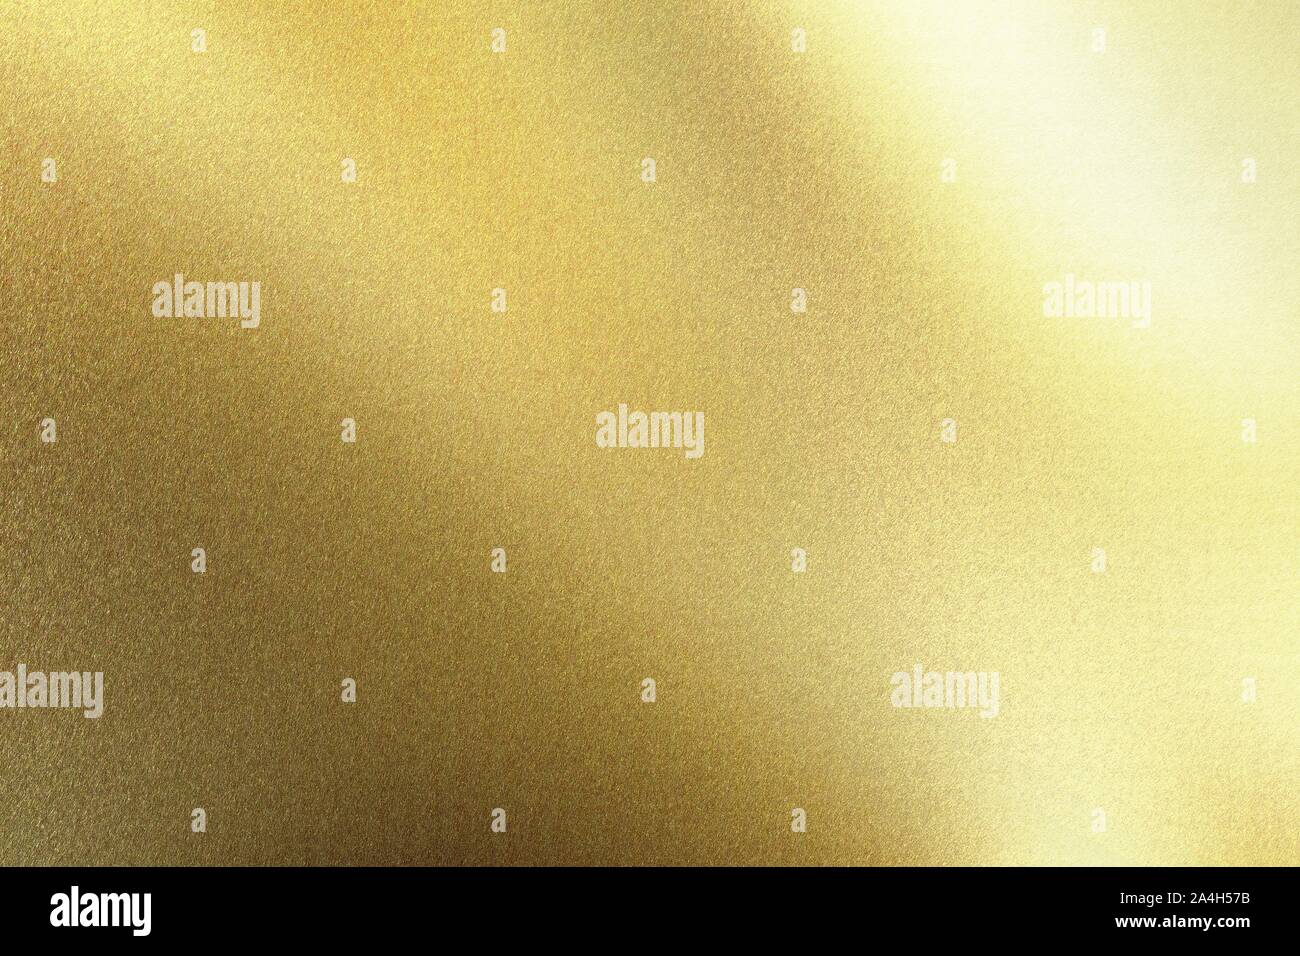 La lumière qui se reflète sur la paroi d'aluminium métal board, abstract texture background Banque D'Images